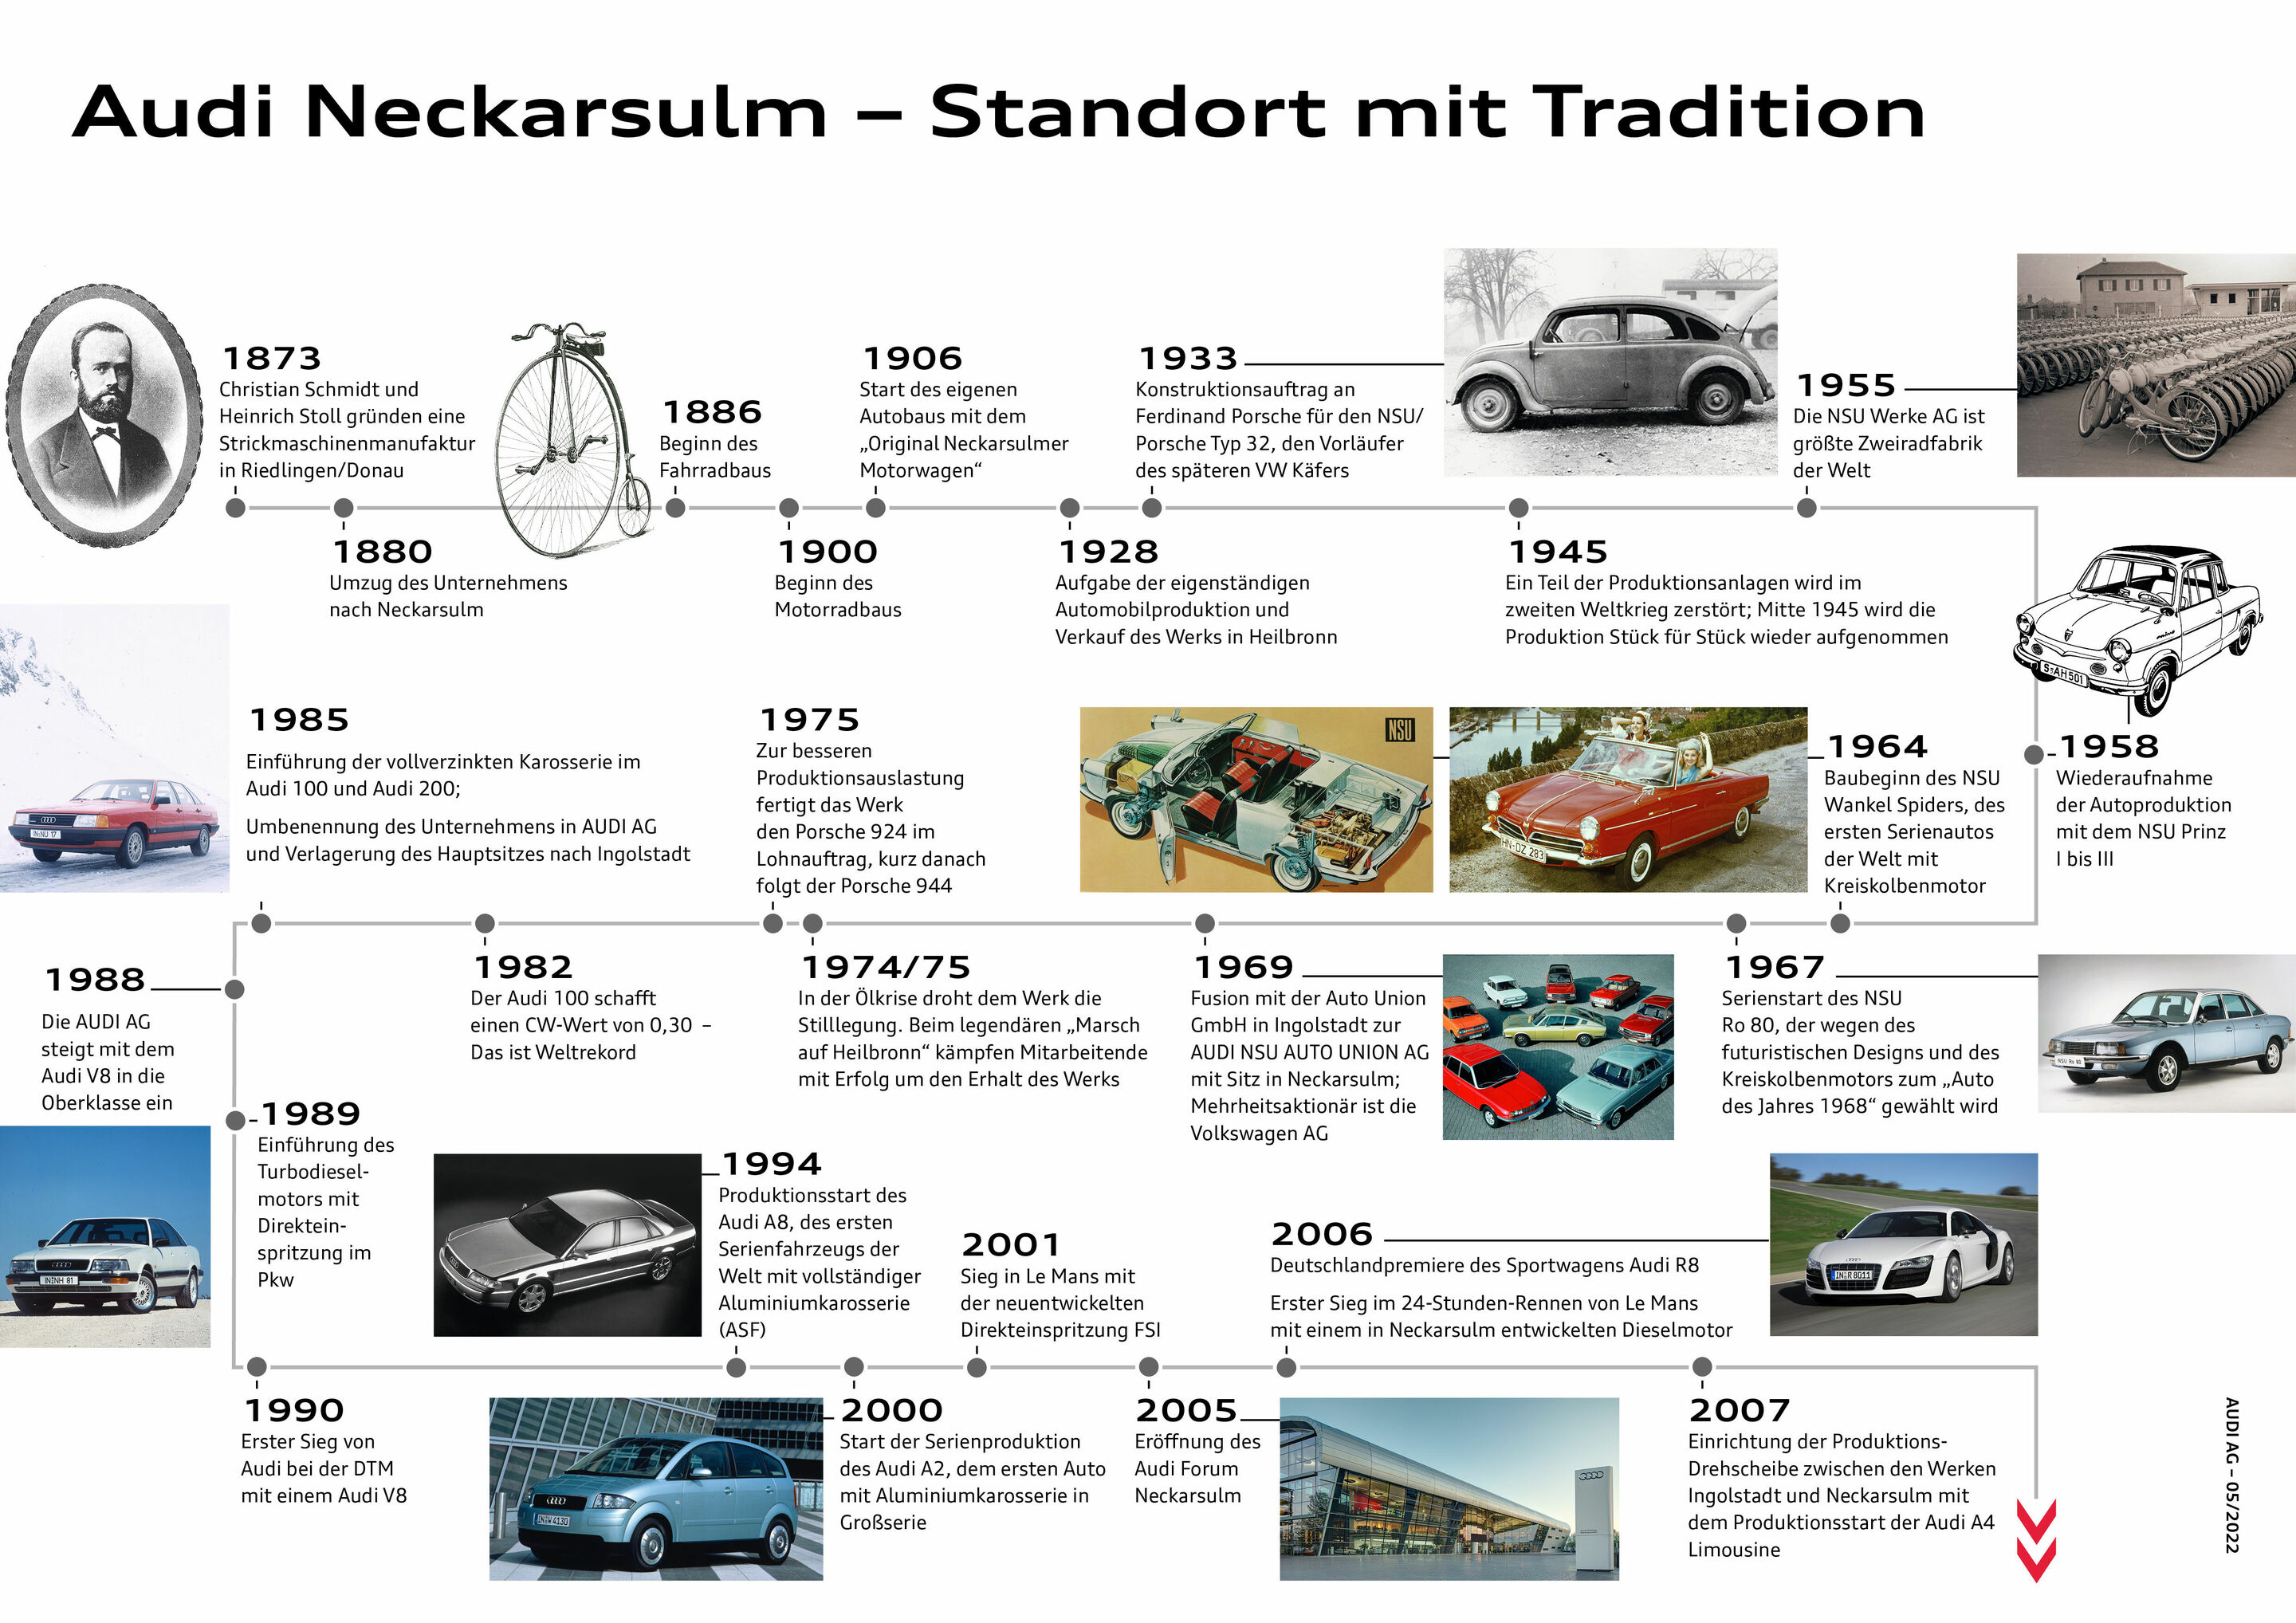 Traditionsmarke NSU und der Audi-Standort Neckarsulm: 150 Jahre Innovation und Transformation